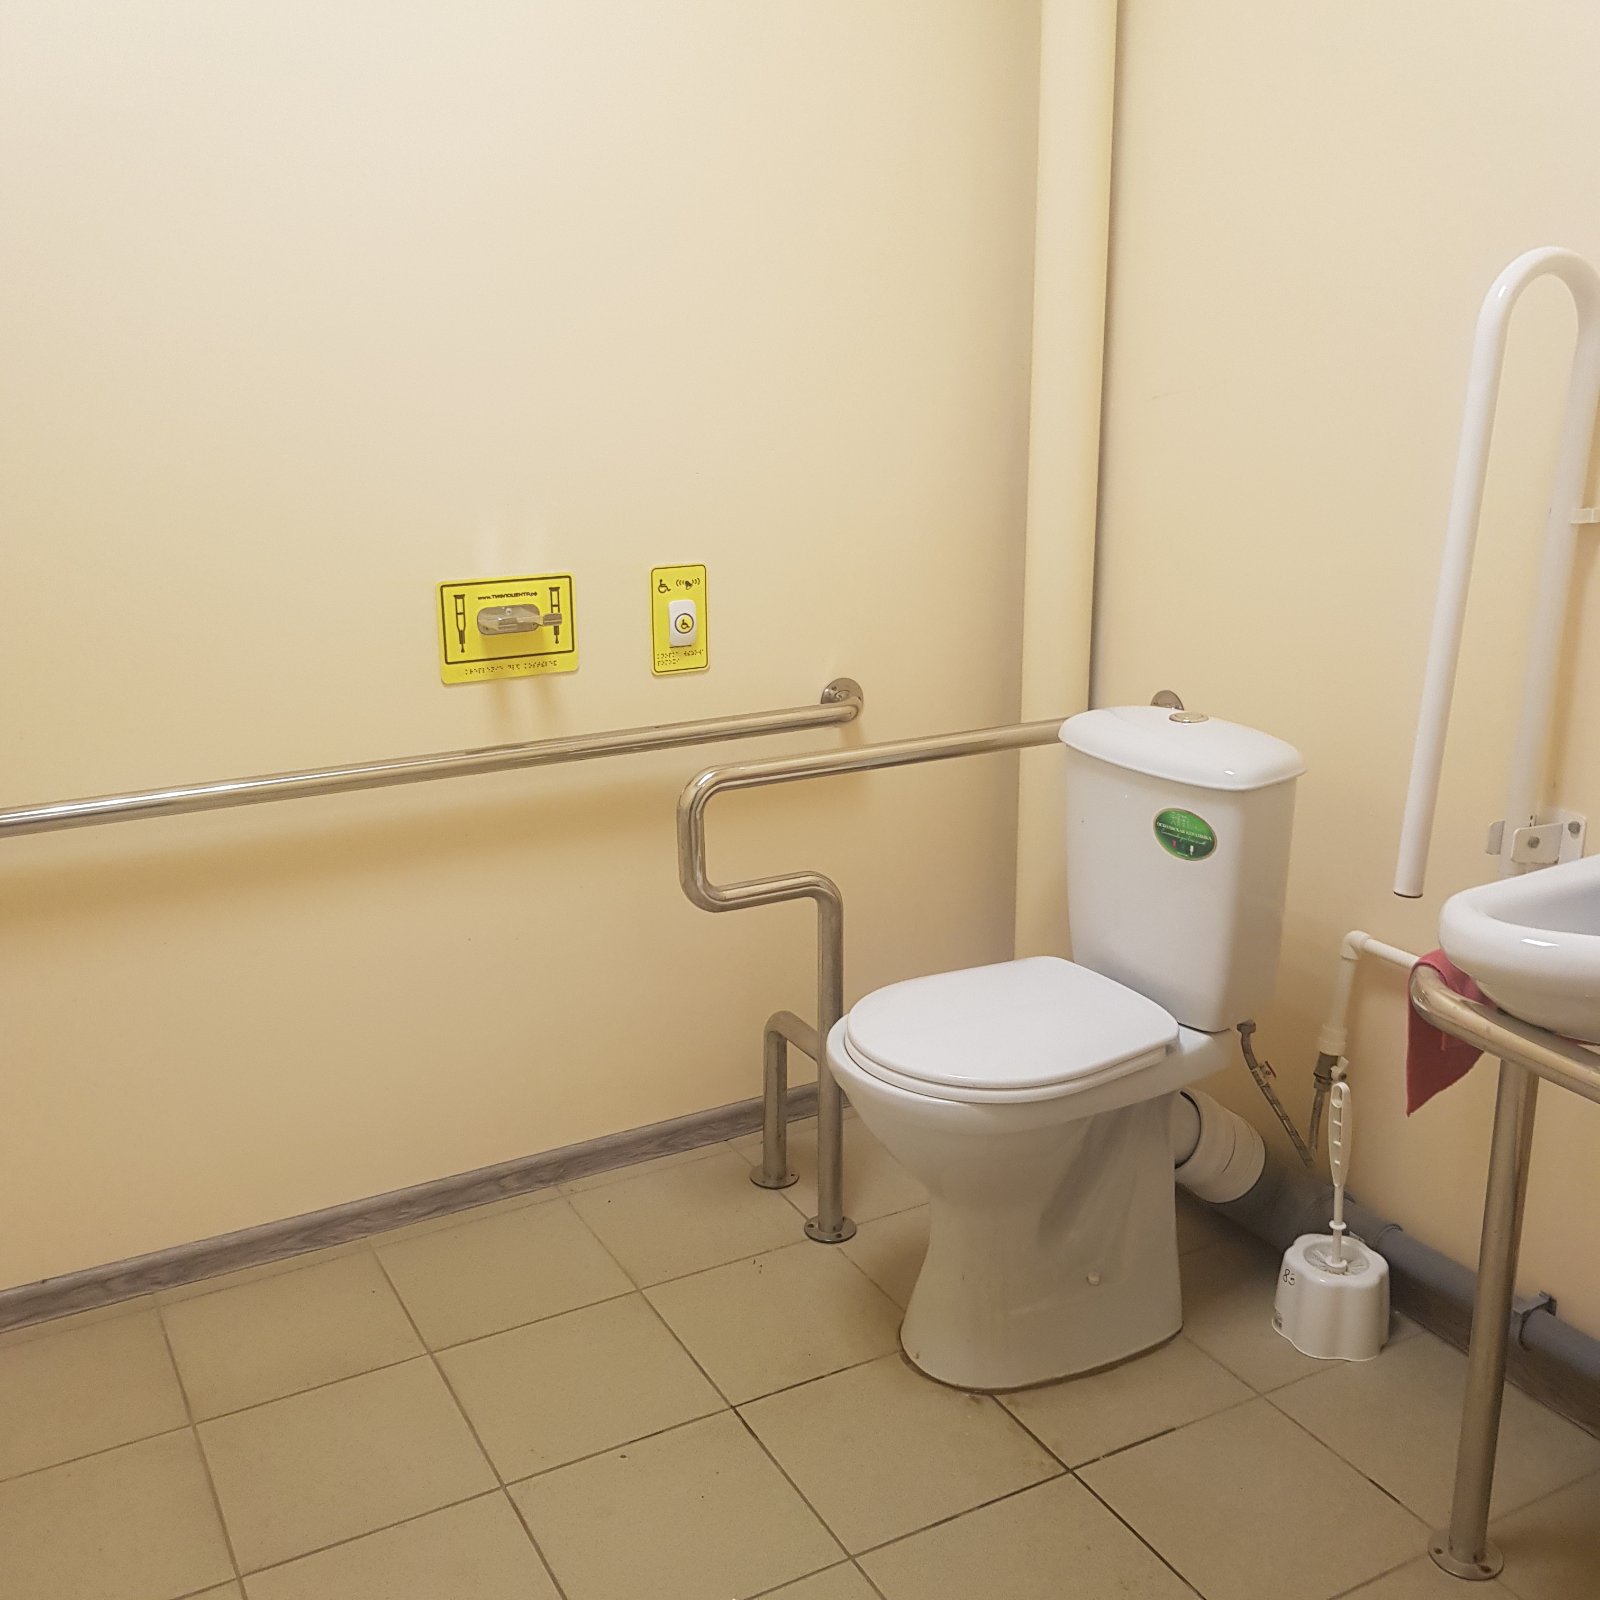 наличие и доступность санитарно-гигиенические помещения